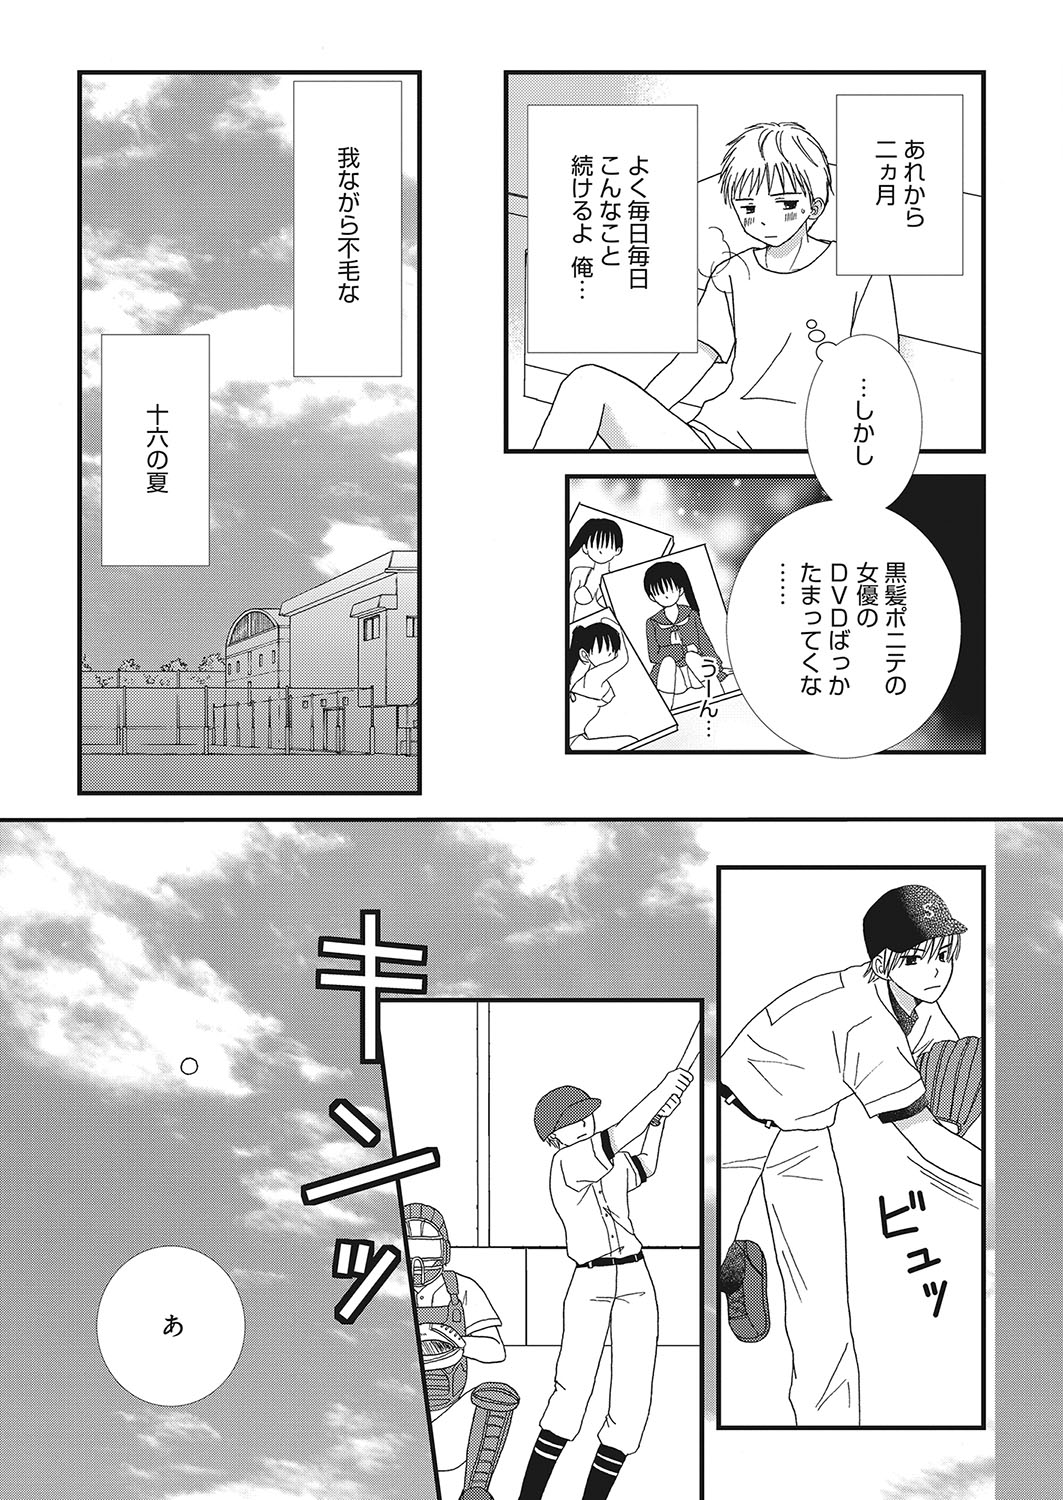 web 漫画ばんがいち Vol.16